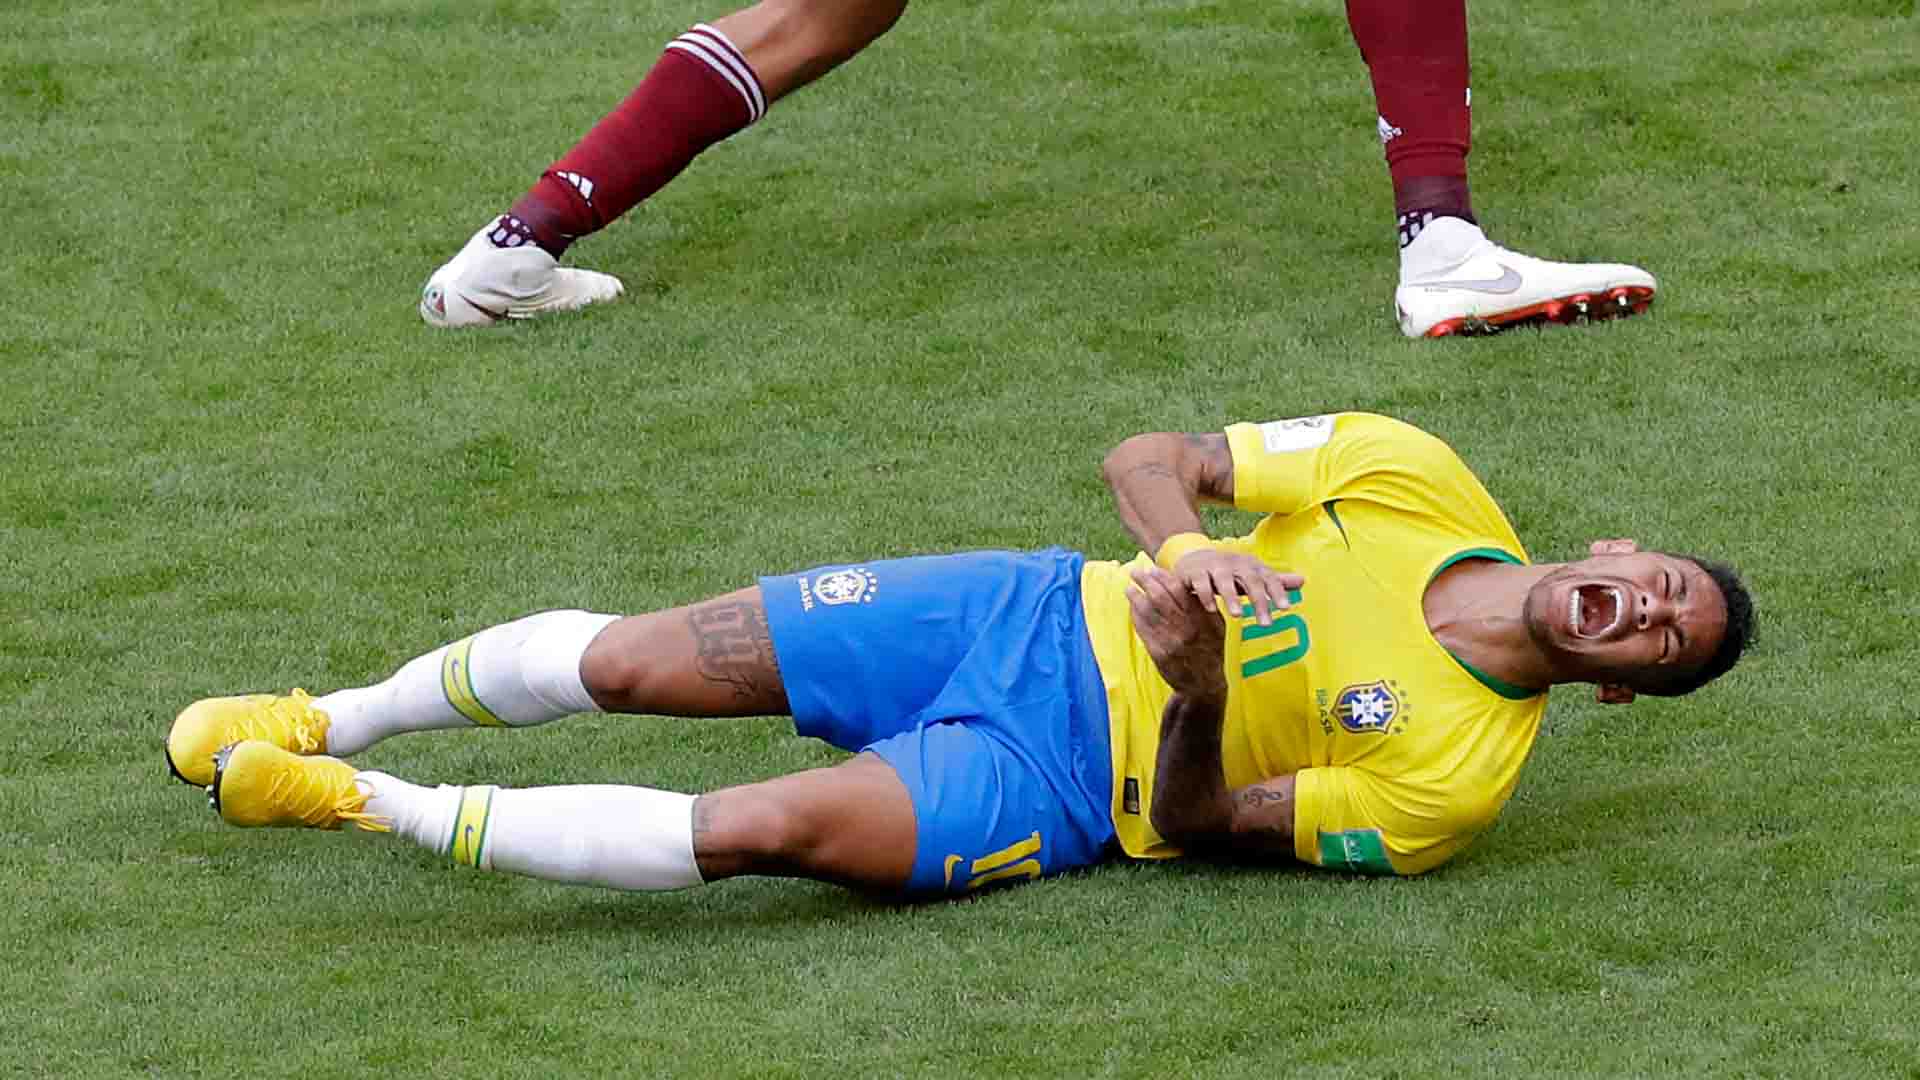 El reto Neymar se hace viral: personas, empresas y perros ruedan por el suelo para burlarse del brasileño